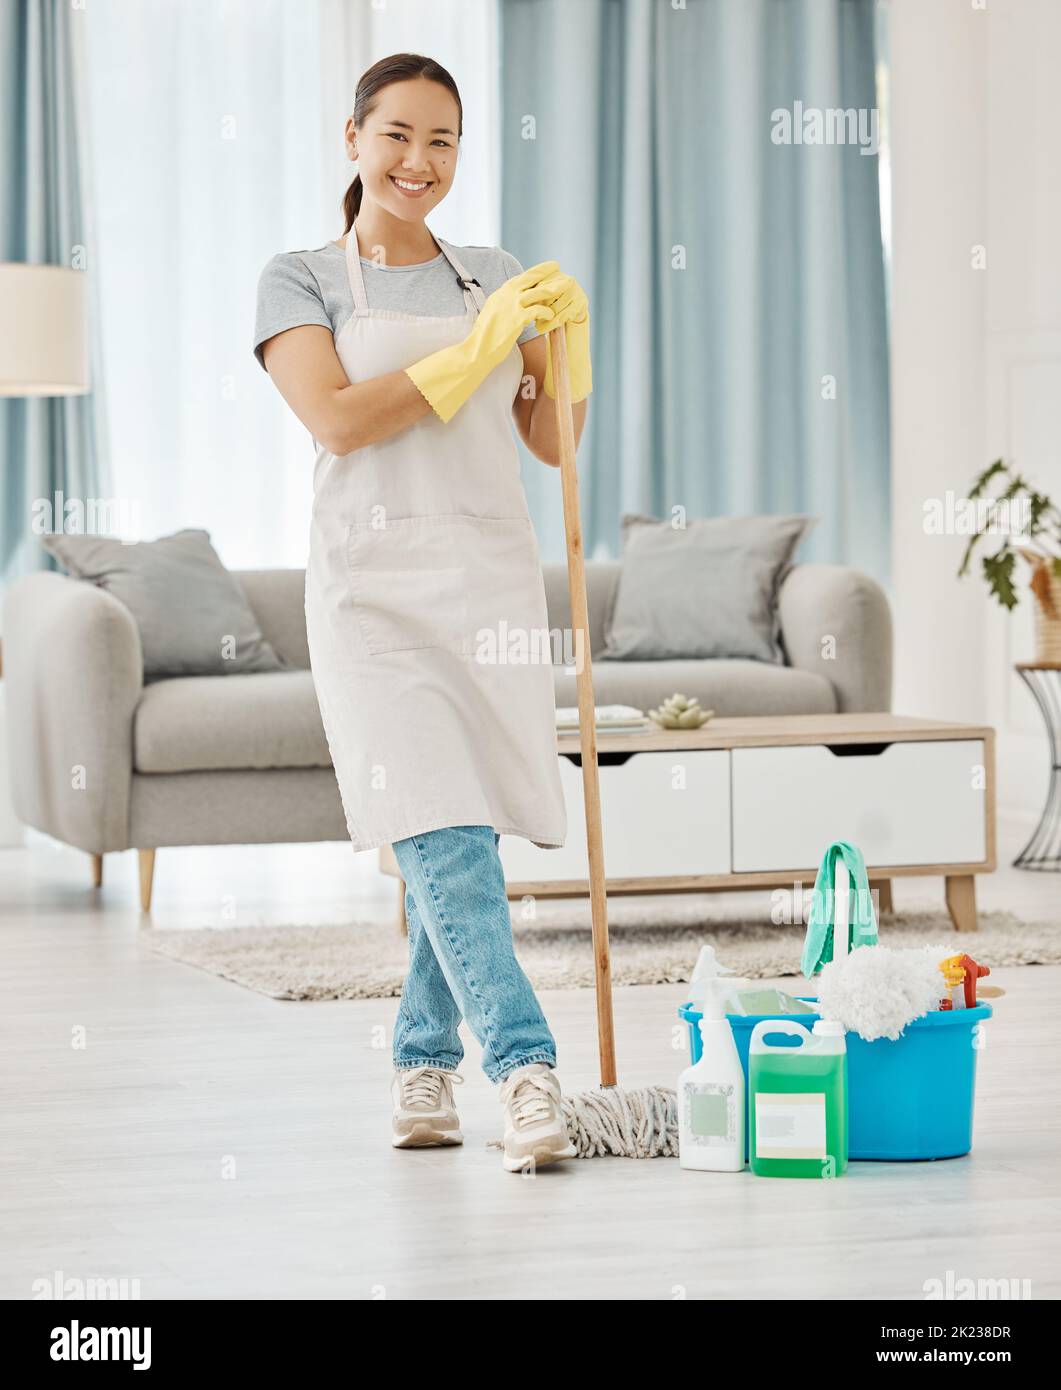 Boden putzen, Hausarbeit und Frau, die im Hausdienst arbeitet, wischt Wohnzimmer, macht Arbeit mit Lächeln und freut sich, Hauswohnung zu reinigen. Porträt von Stockfoto